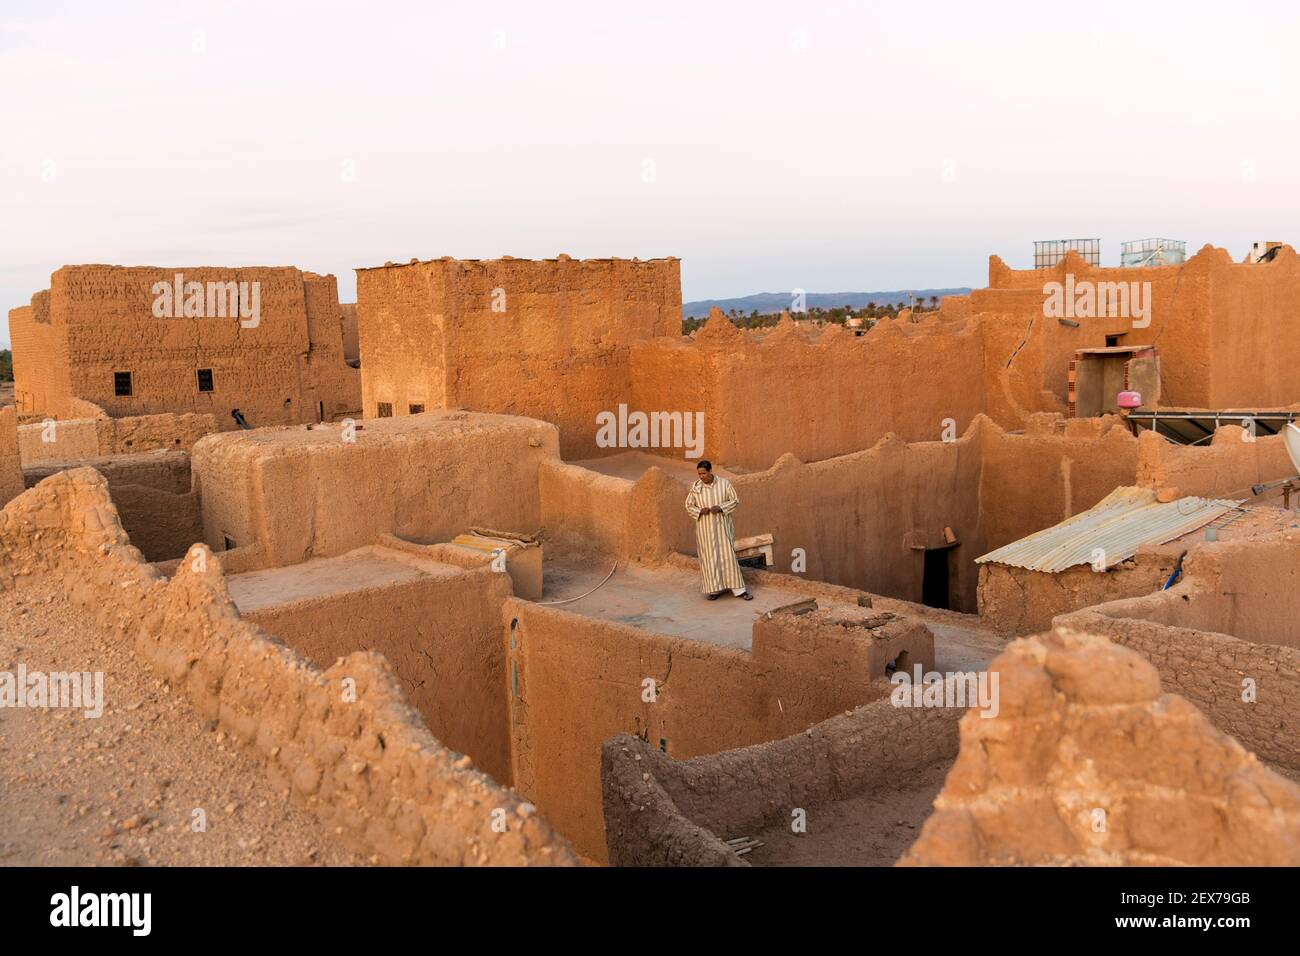 Marokko, Tinejdad, Todra Valley, Ksar El Khorbat, ist ein Dorf mit befestigten Mauern aus Boden, einsamem Mann auf dem Dach Stockfoto